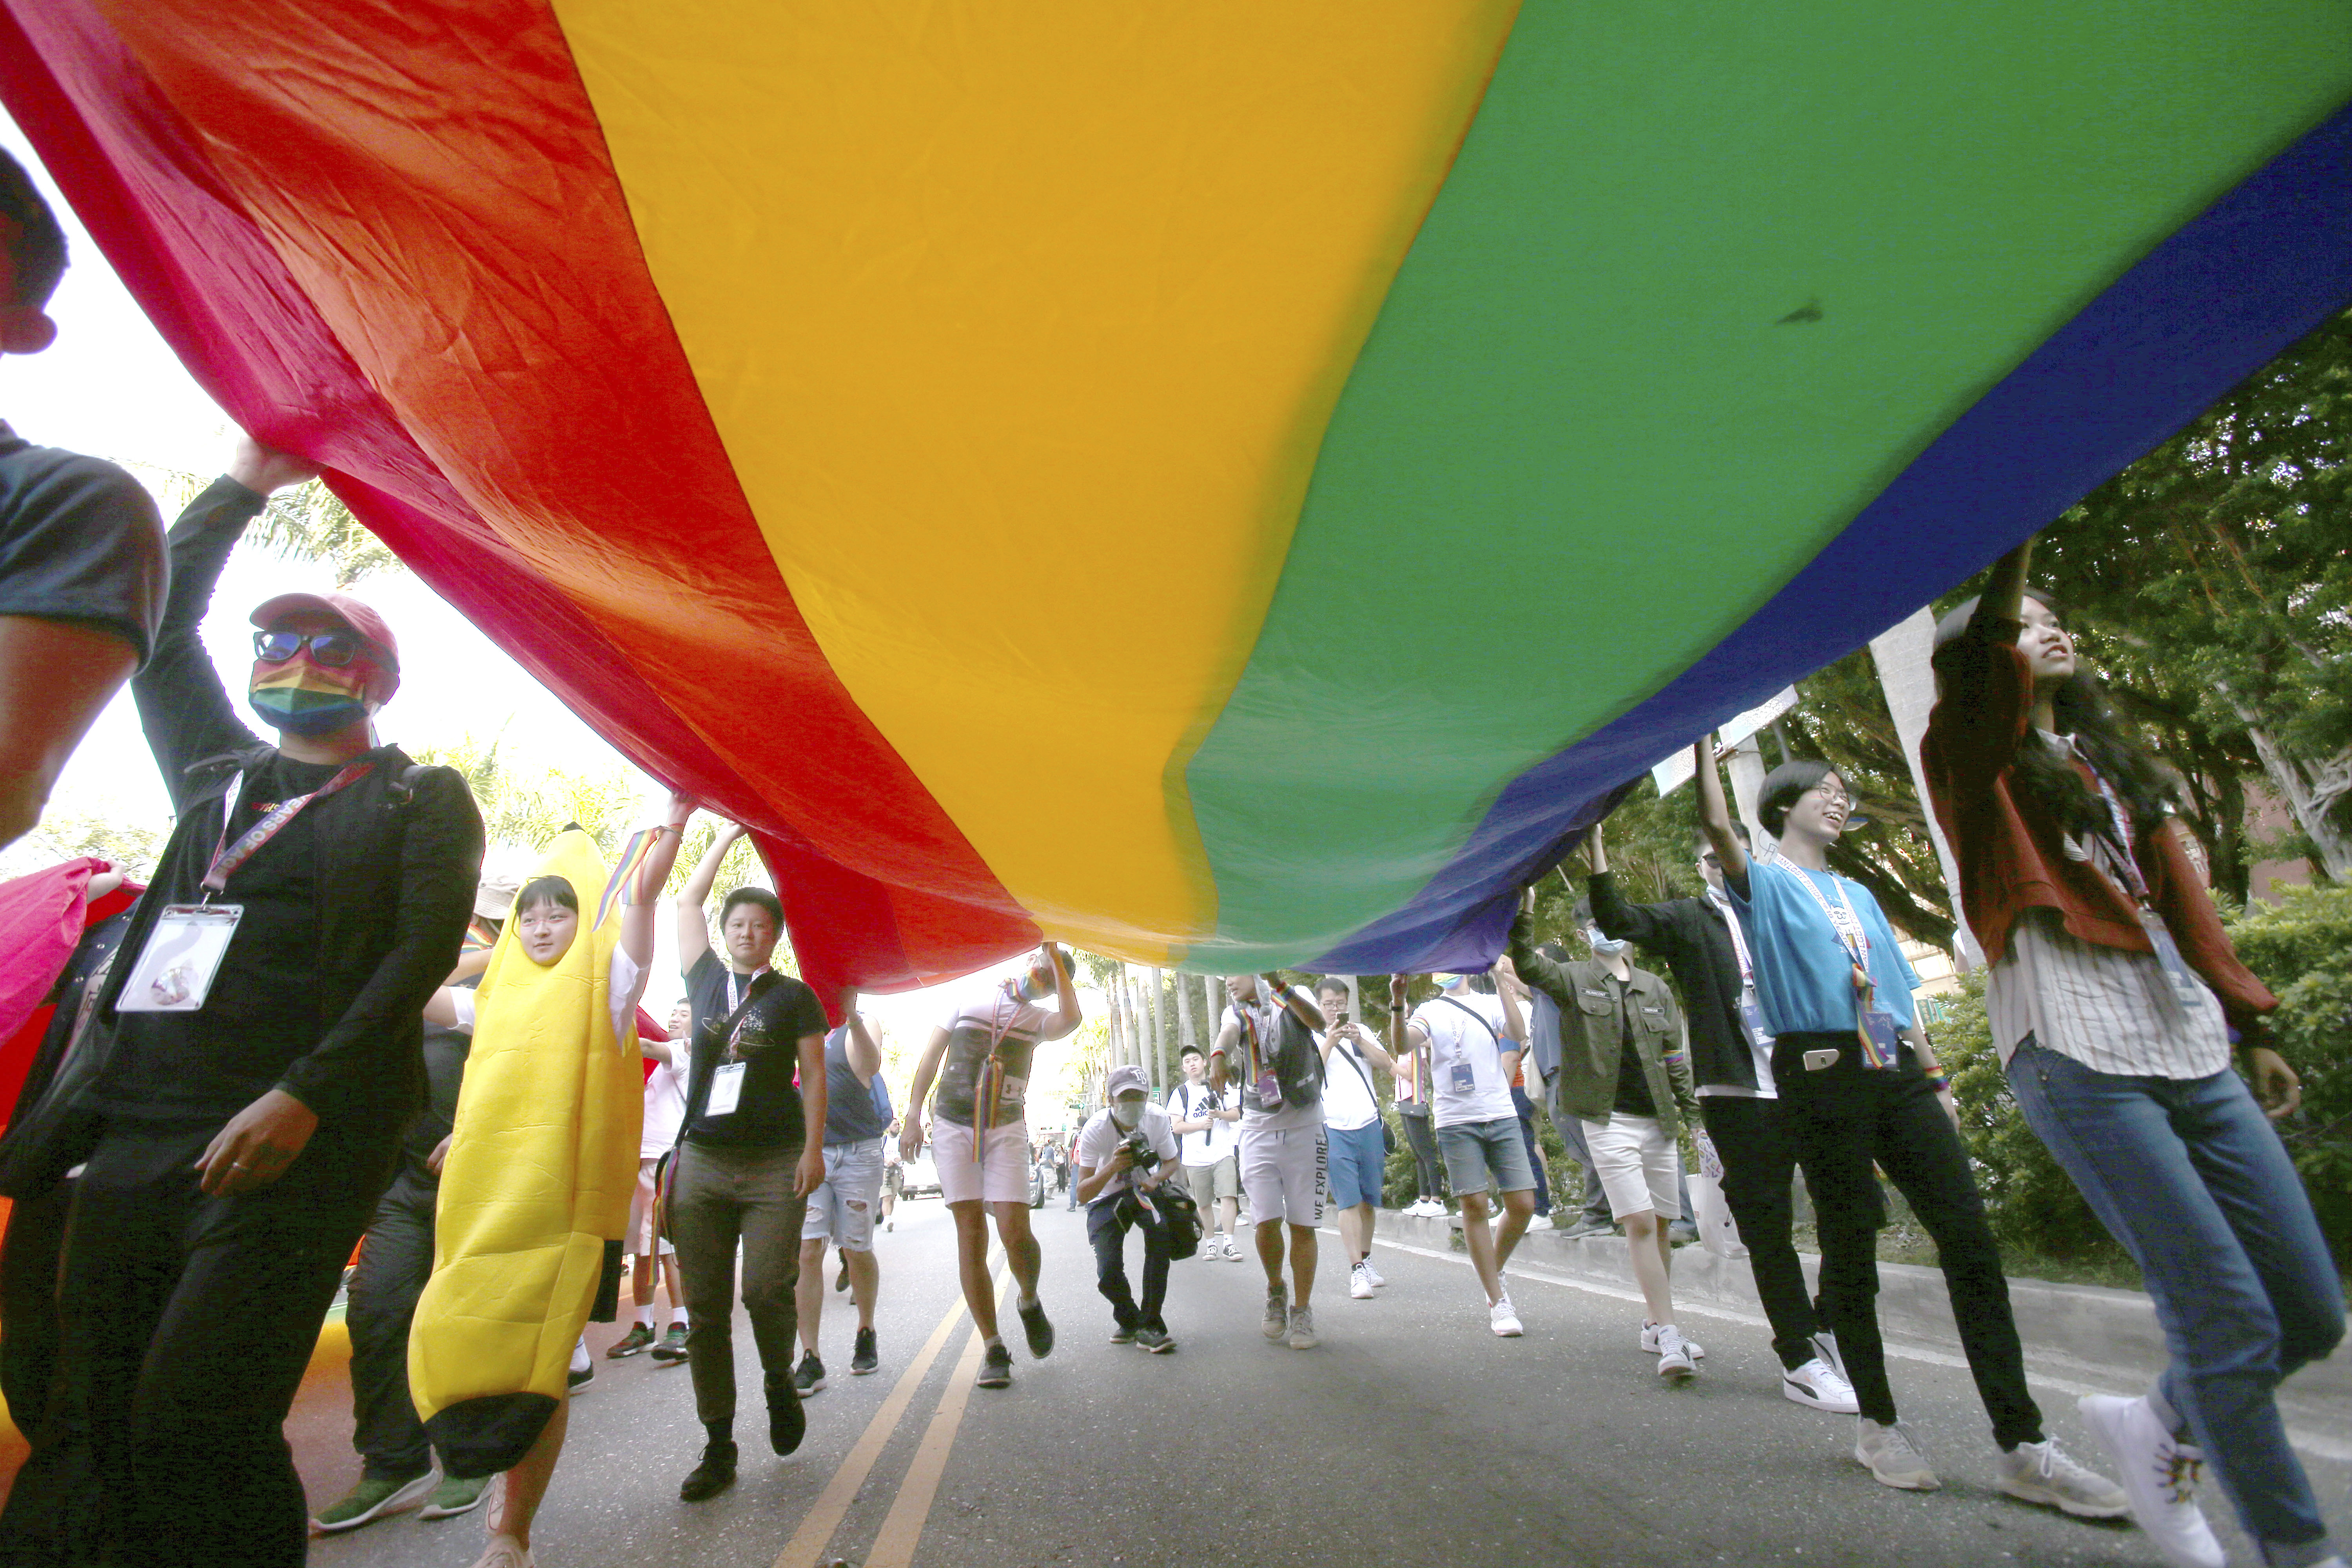 south florida gay pride parade